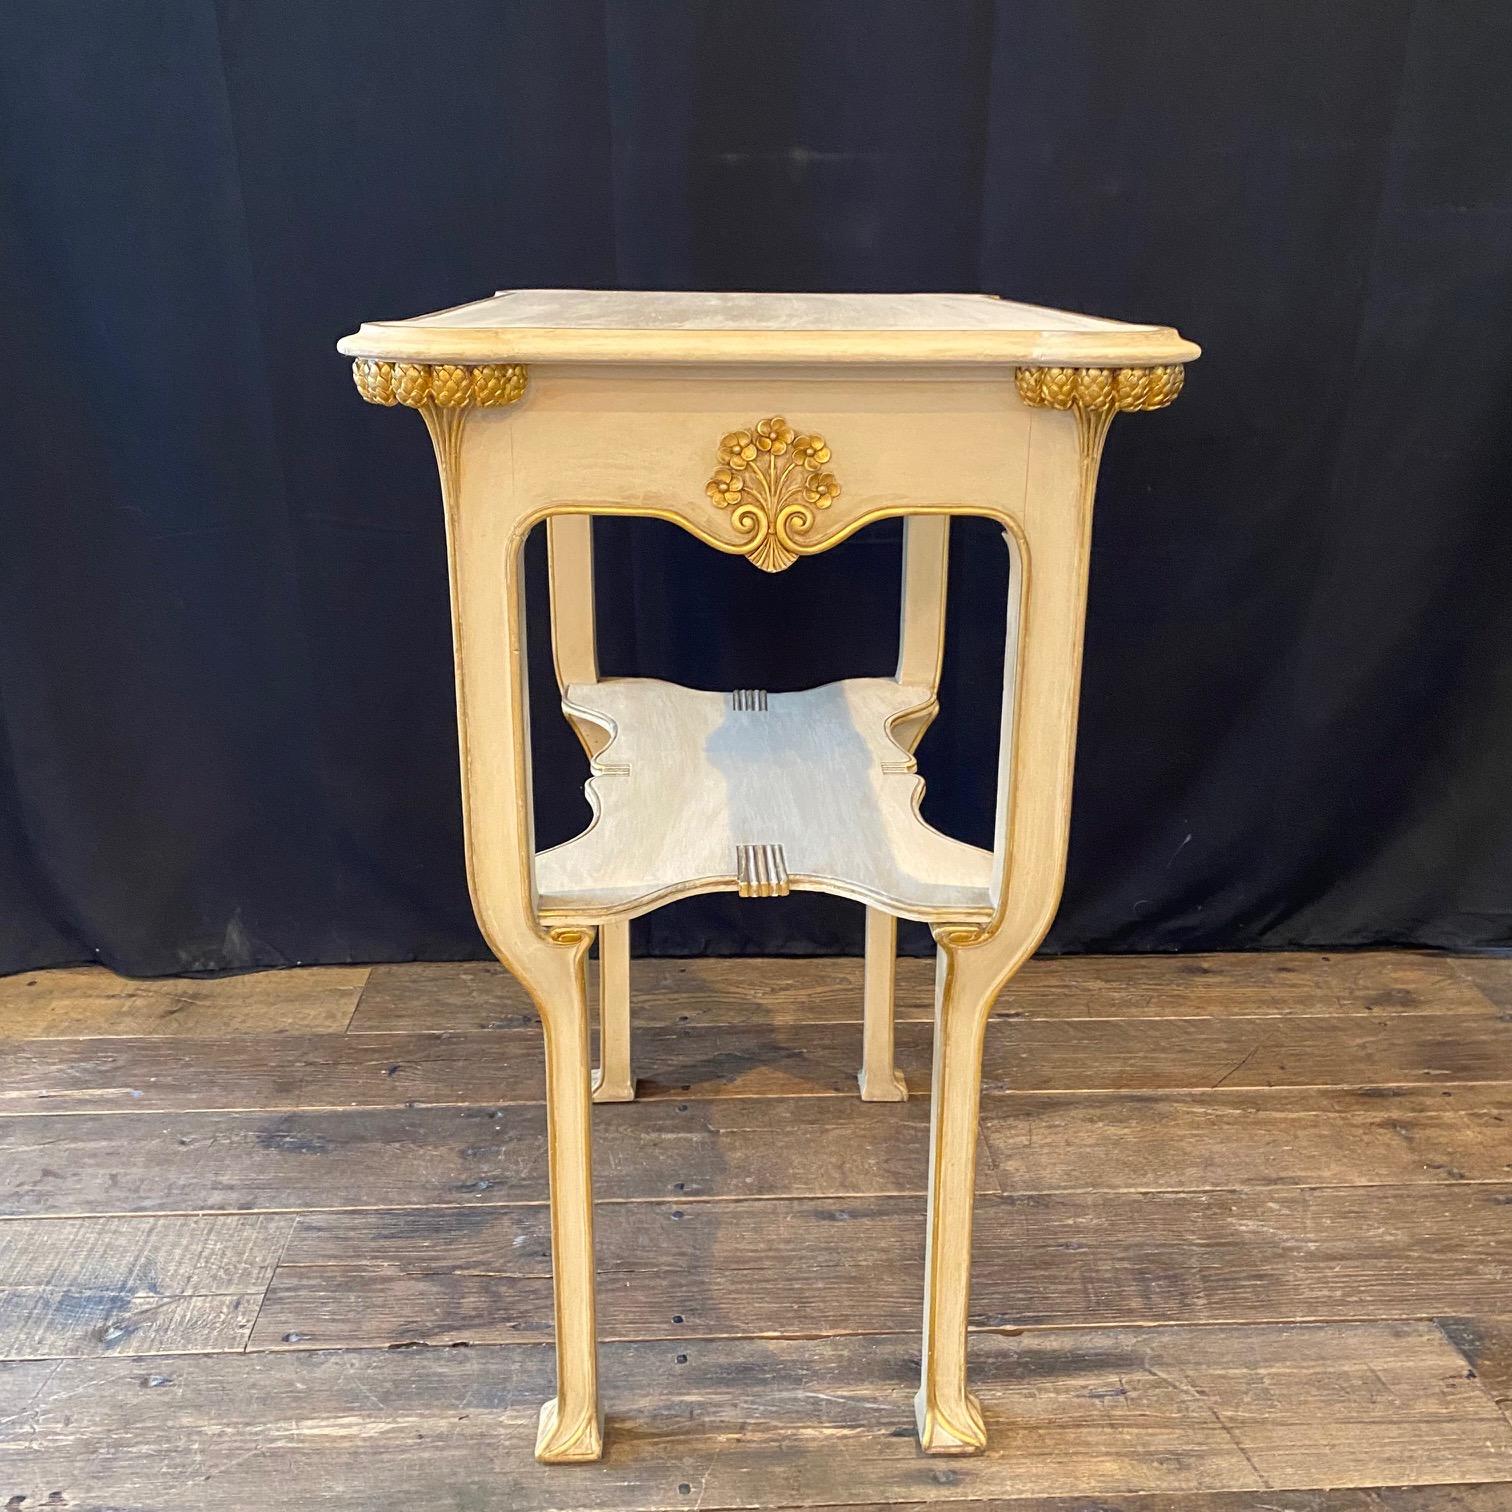 Charmante et élégante table d'appoint italienne Art Nouveau en blanc cassé neutre et or, d'une excellente petite taille pour servir dans n'importe quelle pièce de la maison. Peut être vendu séparément ; fait partie d'un ensemble de 11 pièces du